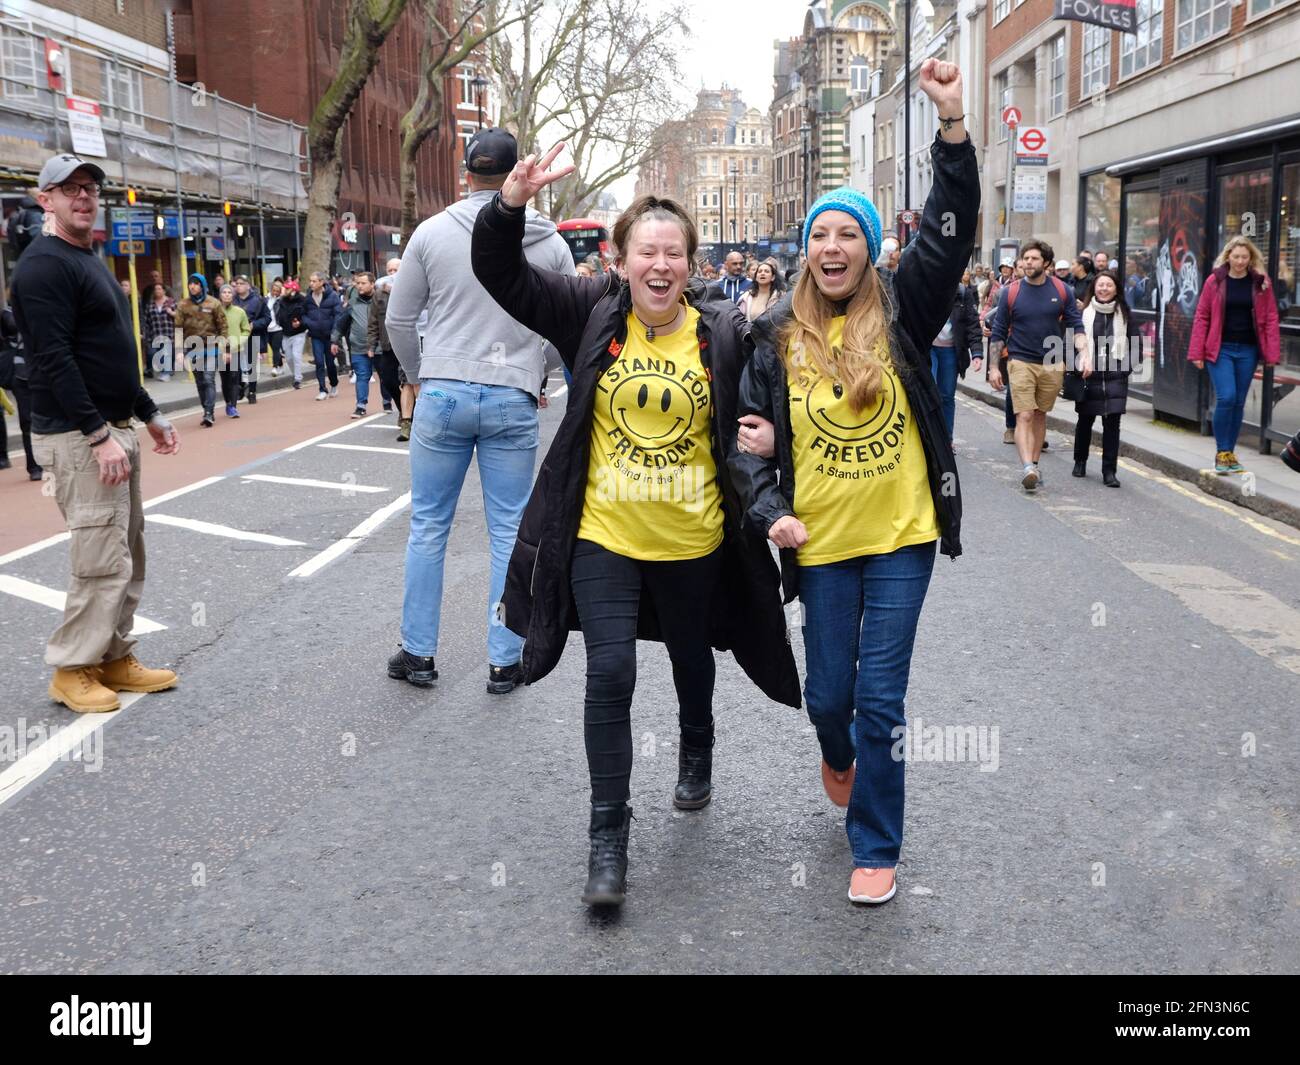 Due manifestanti anti anti anti-lockdown che indossano t-shirt con volti sorridenti, associati alla cultura rave ora adottata sotto questo movimento Foto Stock